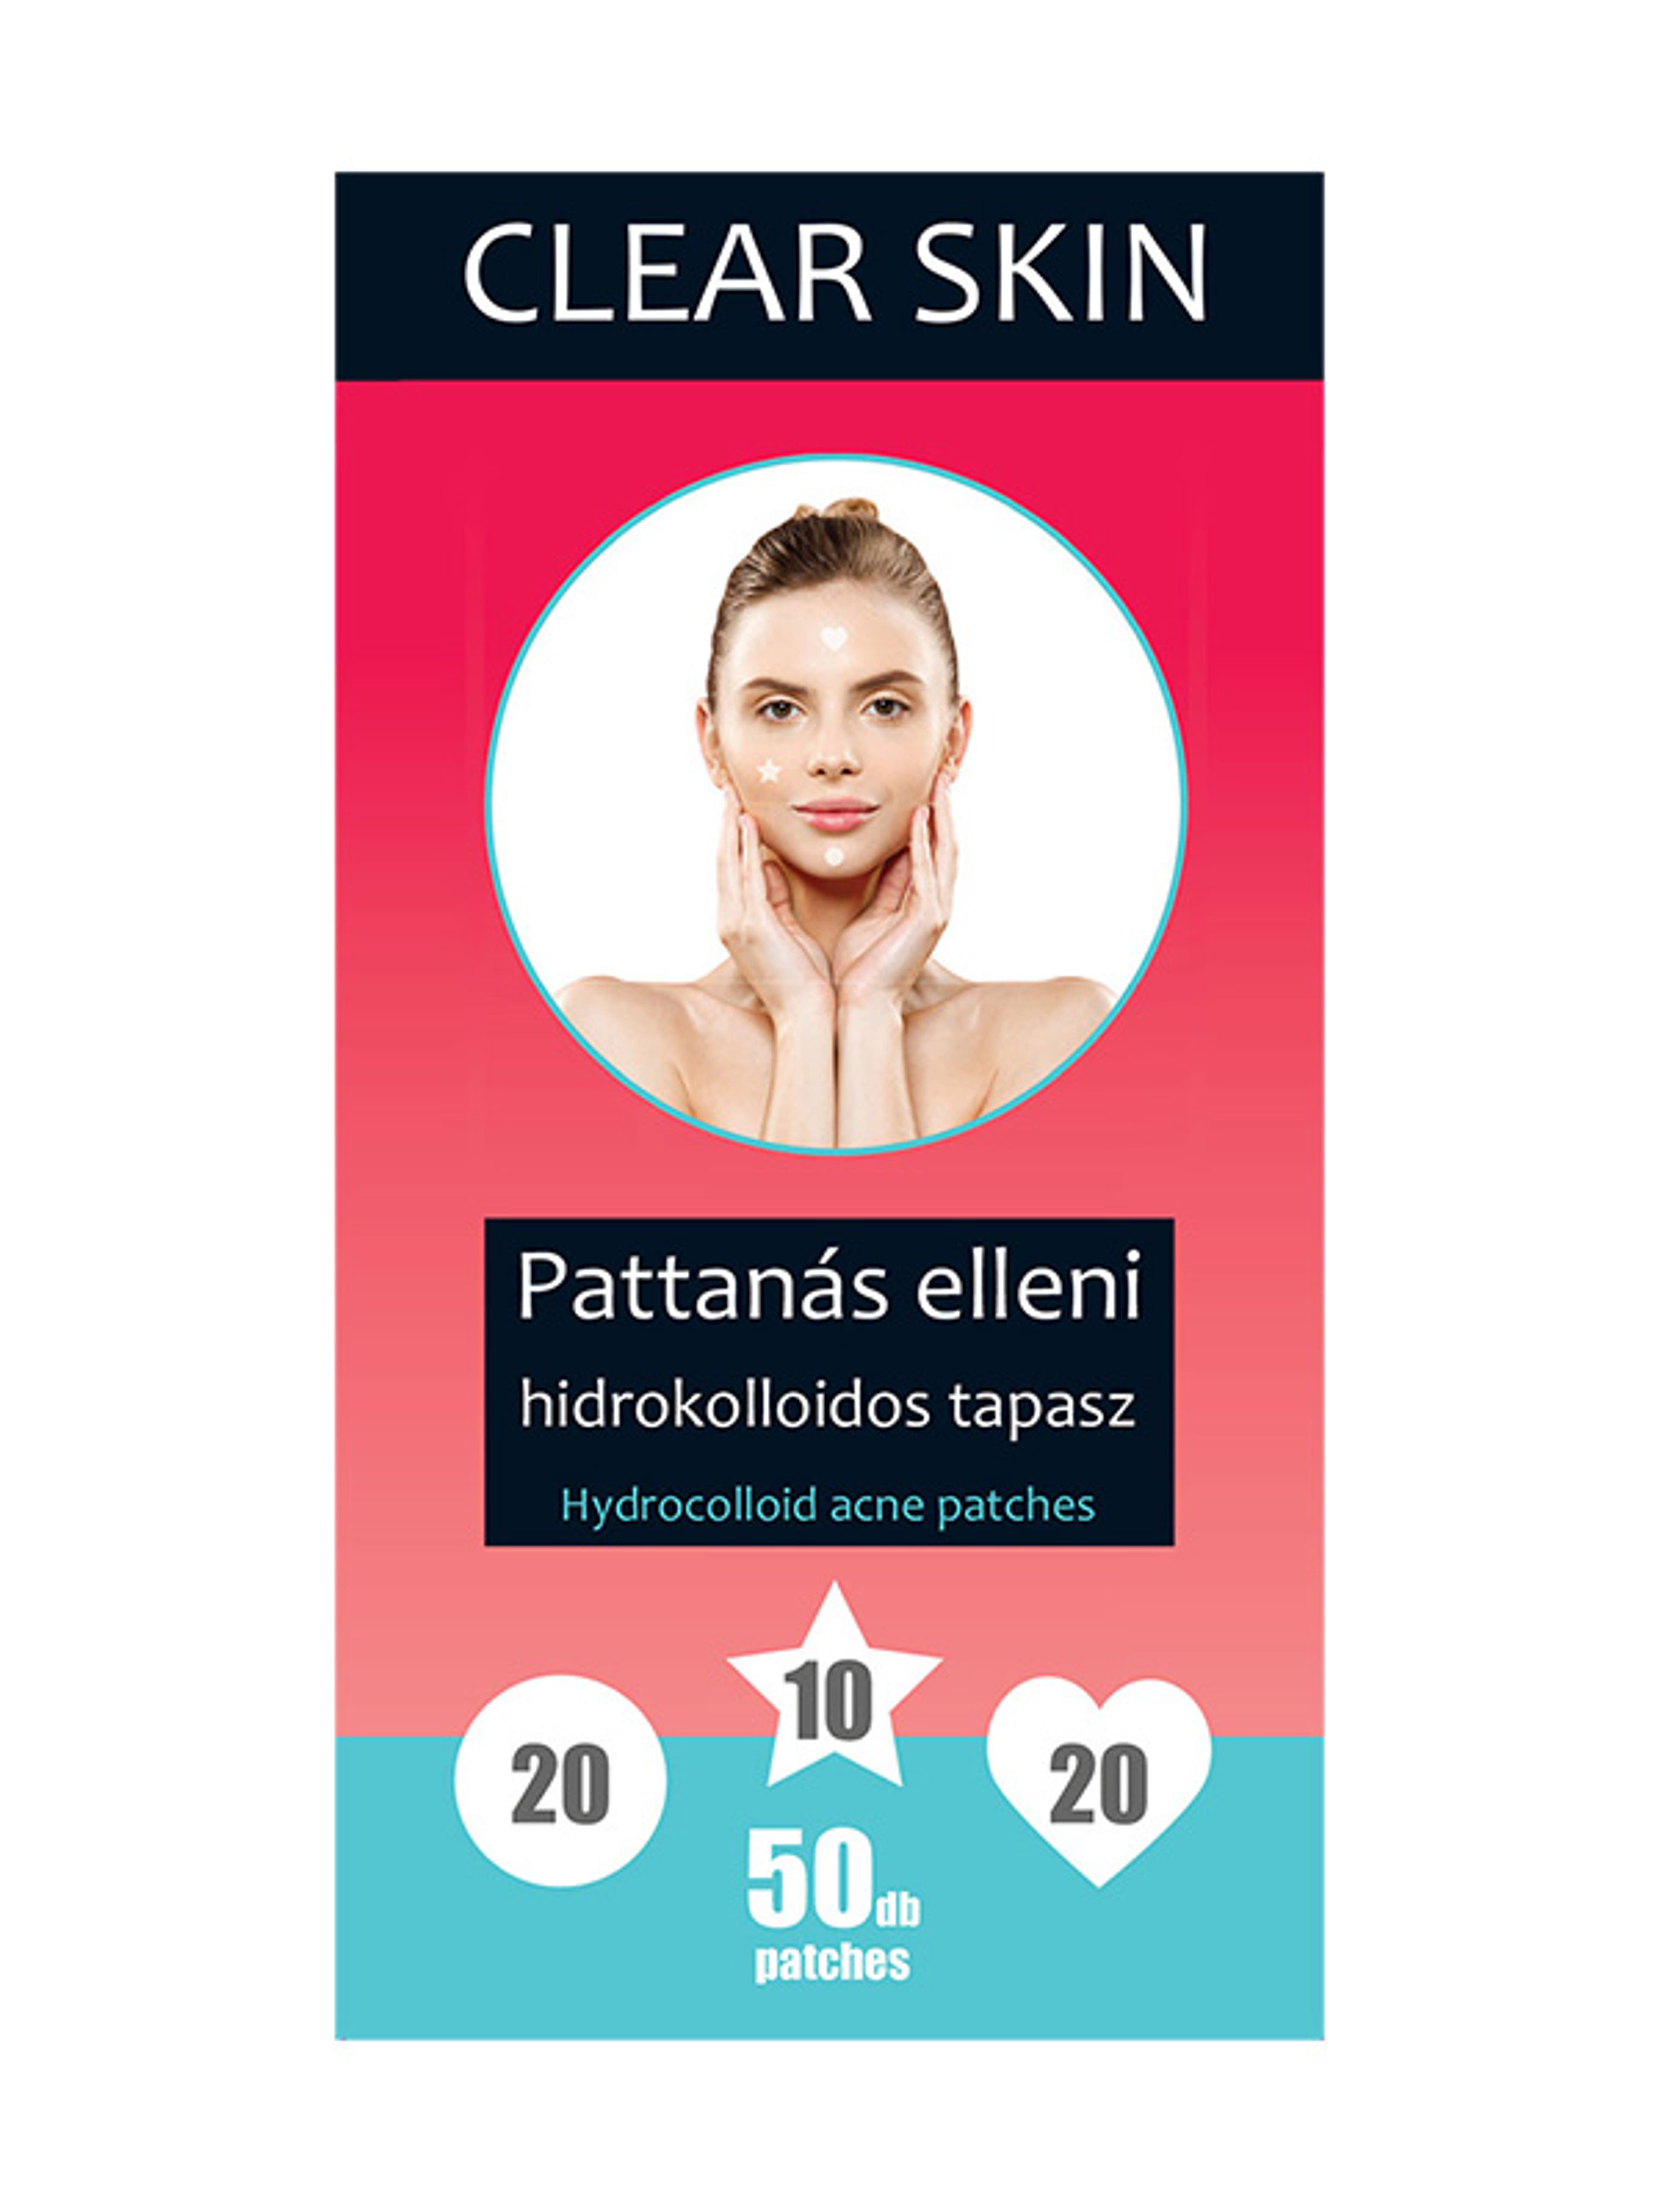 Clear skin pattanas elleni tapasz 50 db-os - 1 db-1